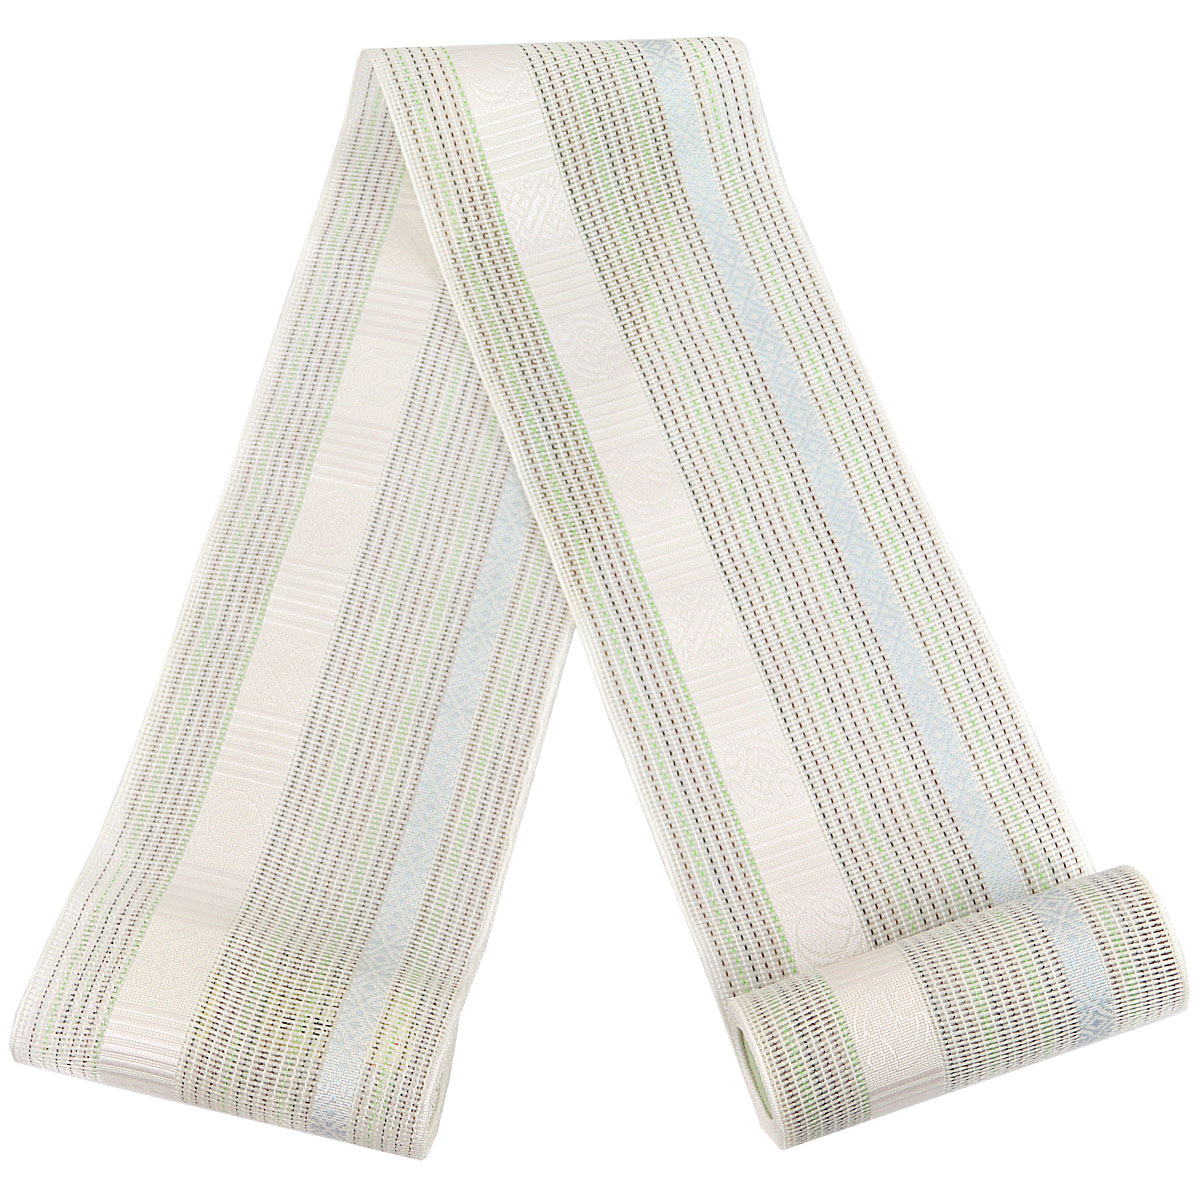 紗夏帯 半幅帯 -14- 正絹 博多織 白/ベージュ系 絹100%